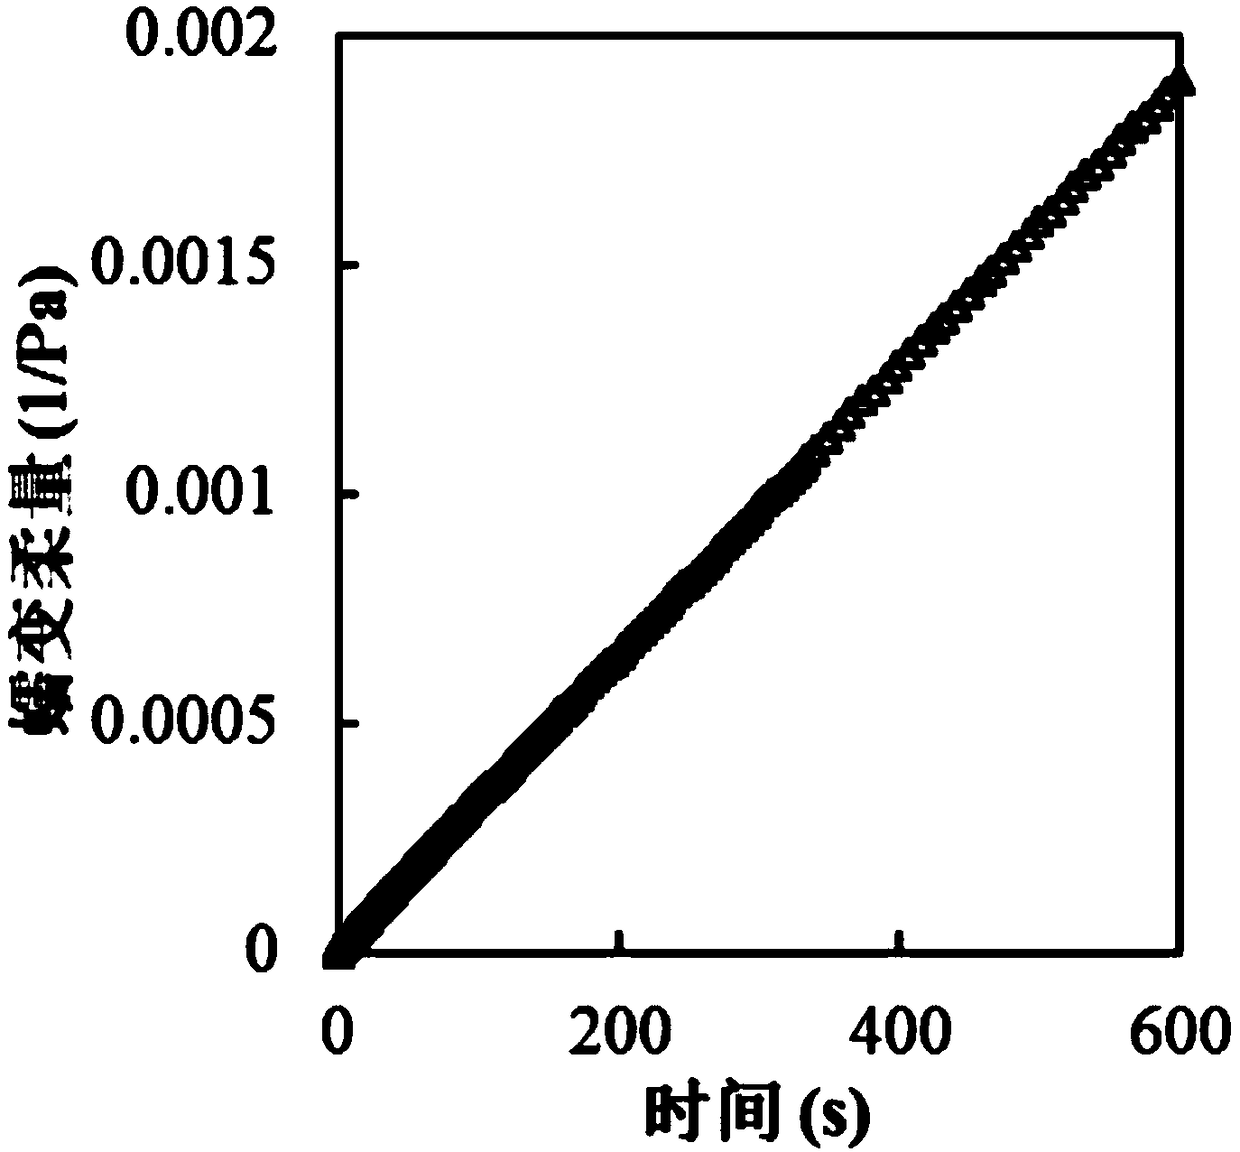 Parameter identification method of asphalt viscoelastic model based on comprehensive data optimization criterion